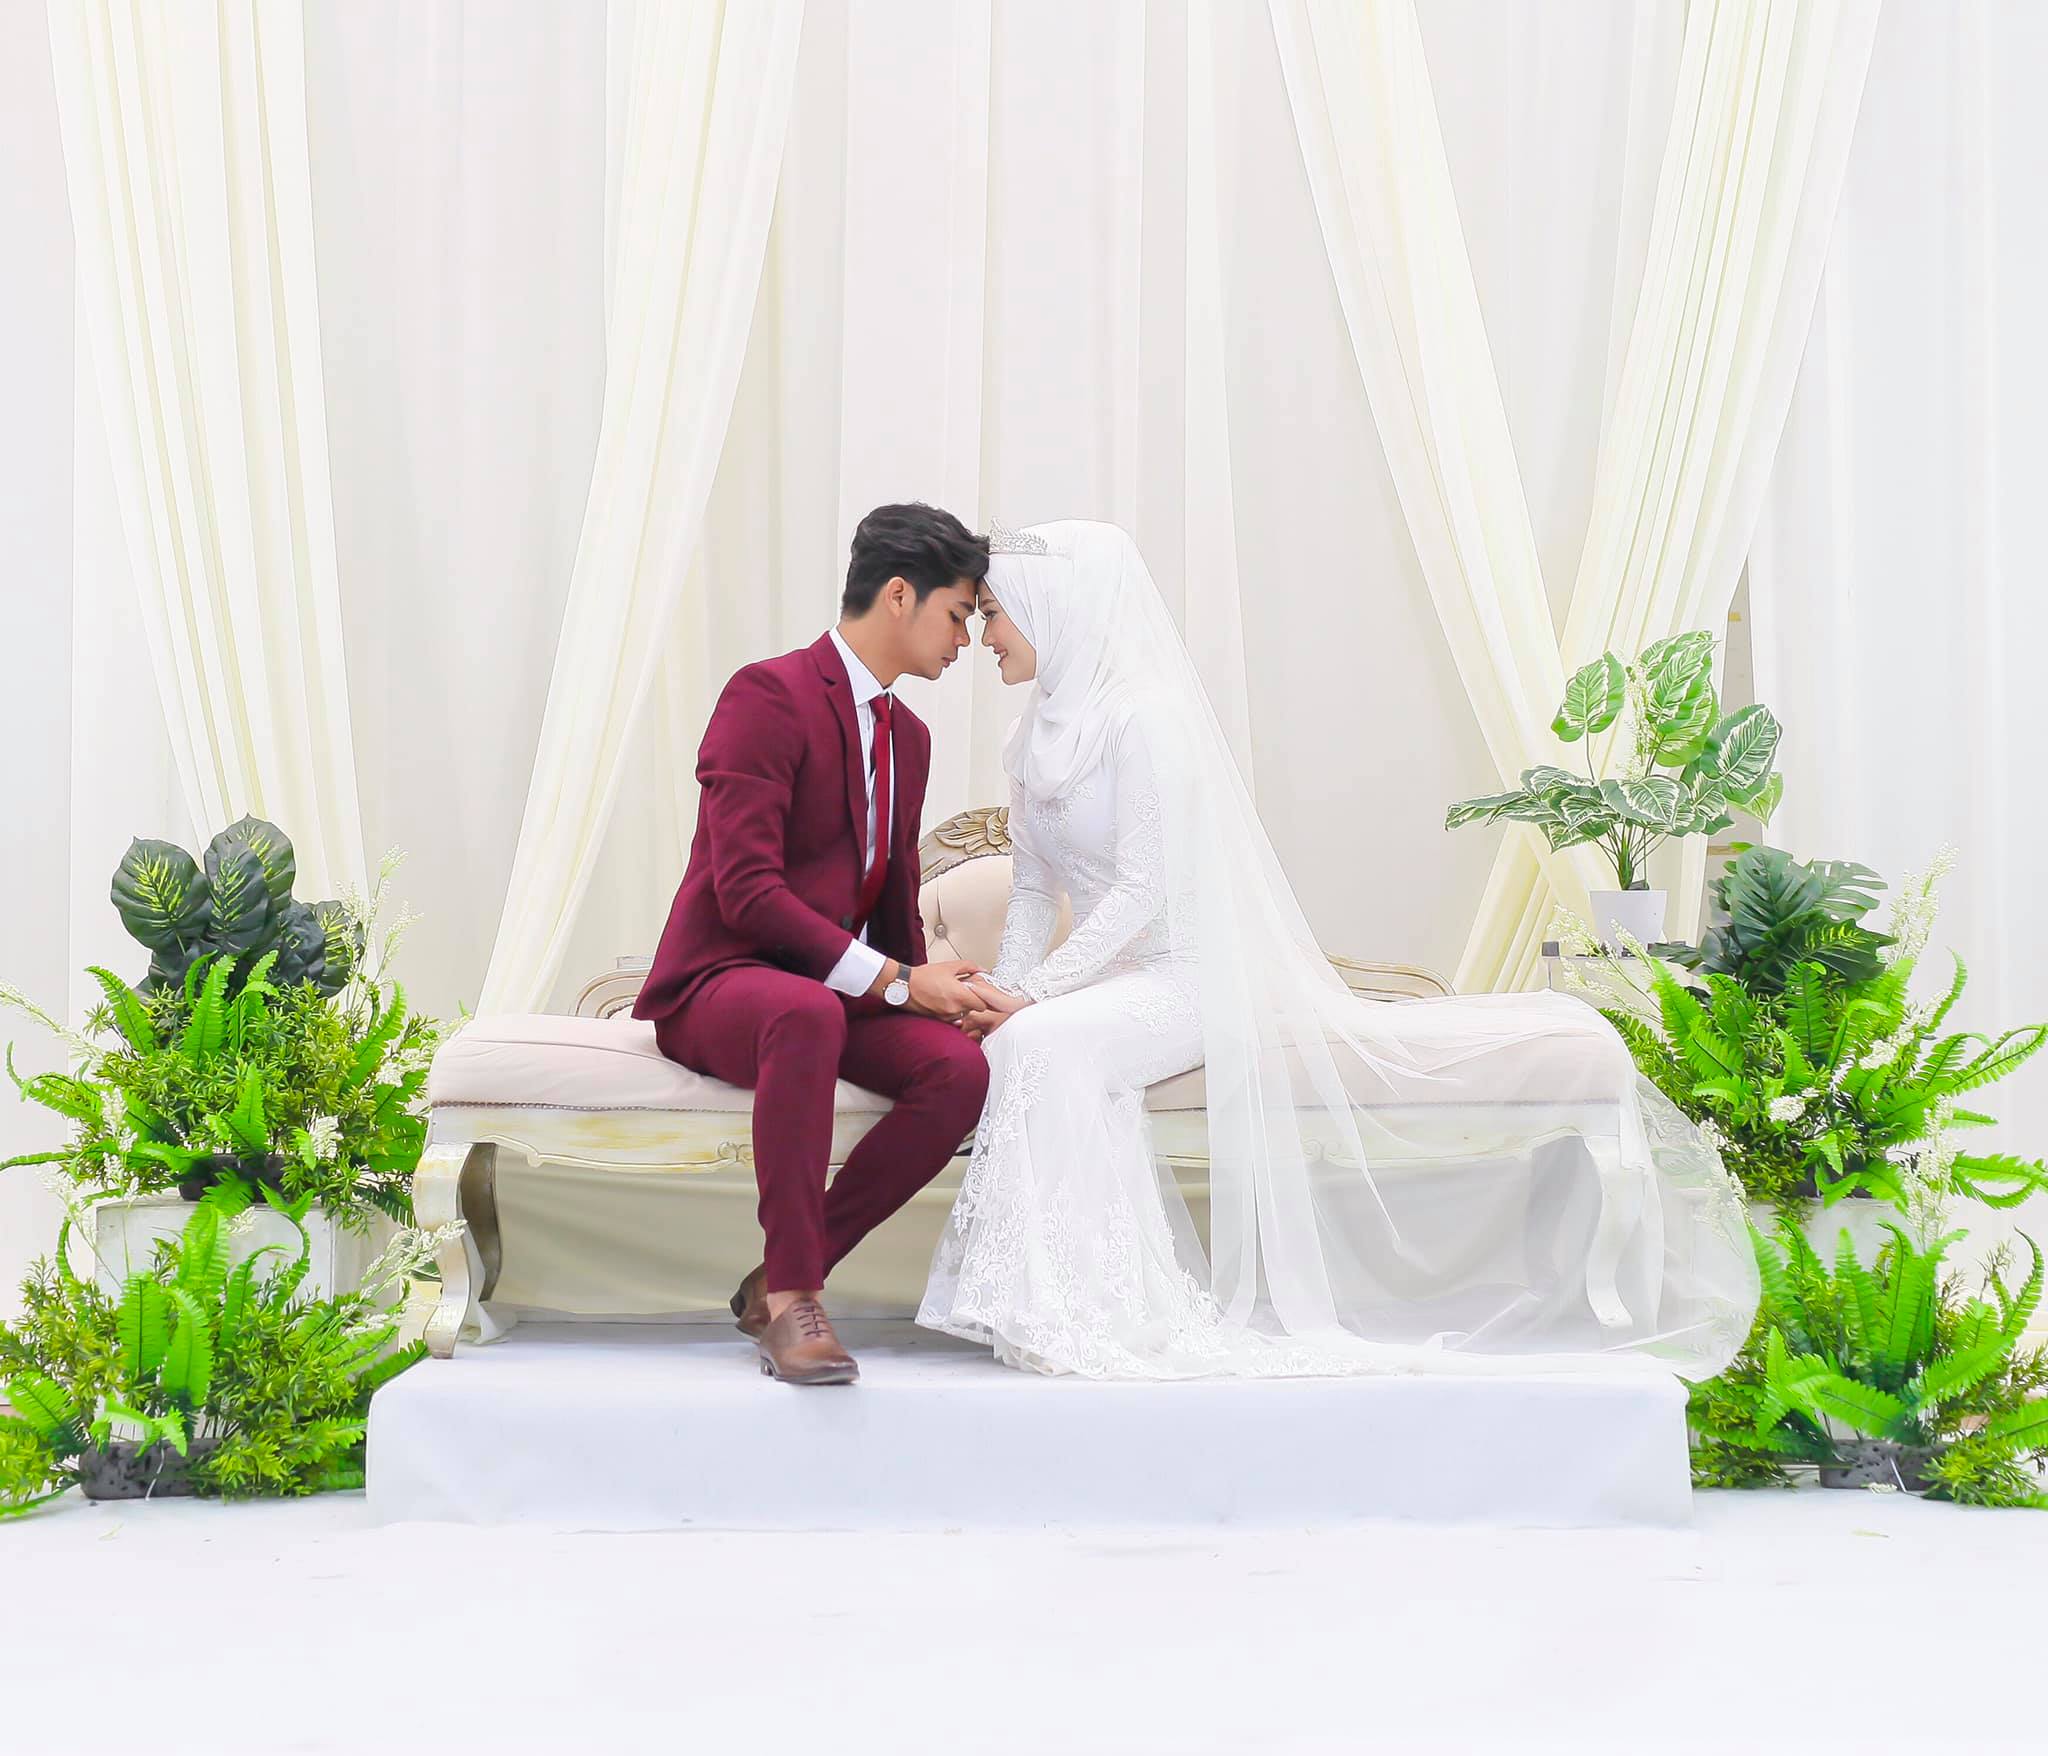 4 Tahun Kenal Baru Jatuh Cinta, Abang Photographer Terus Ajak Bridemaids Kahwin 6